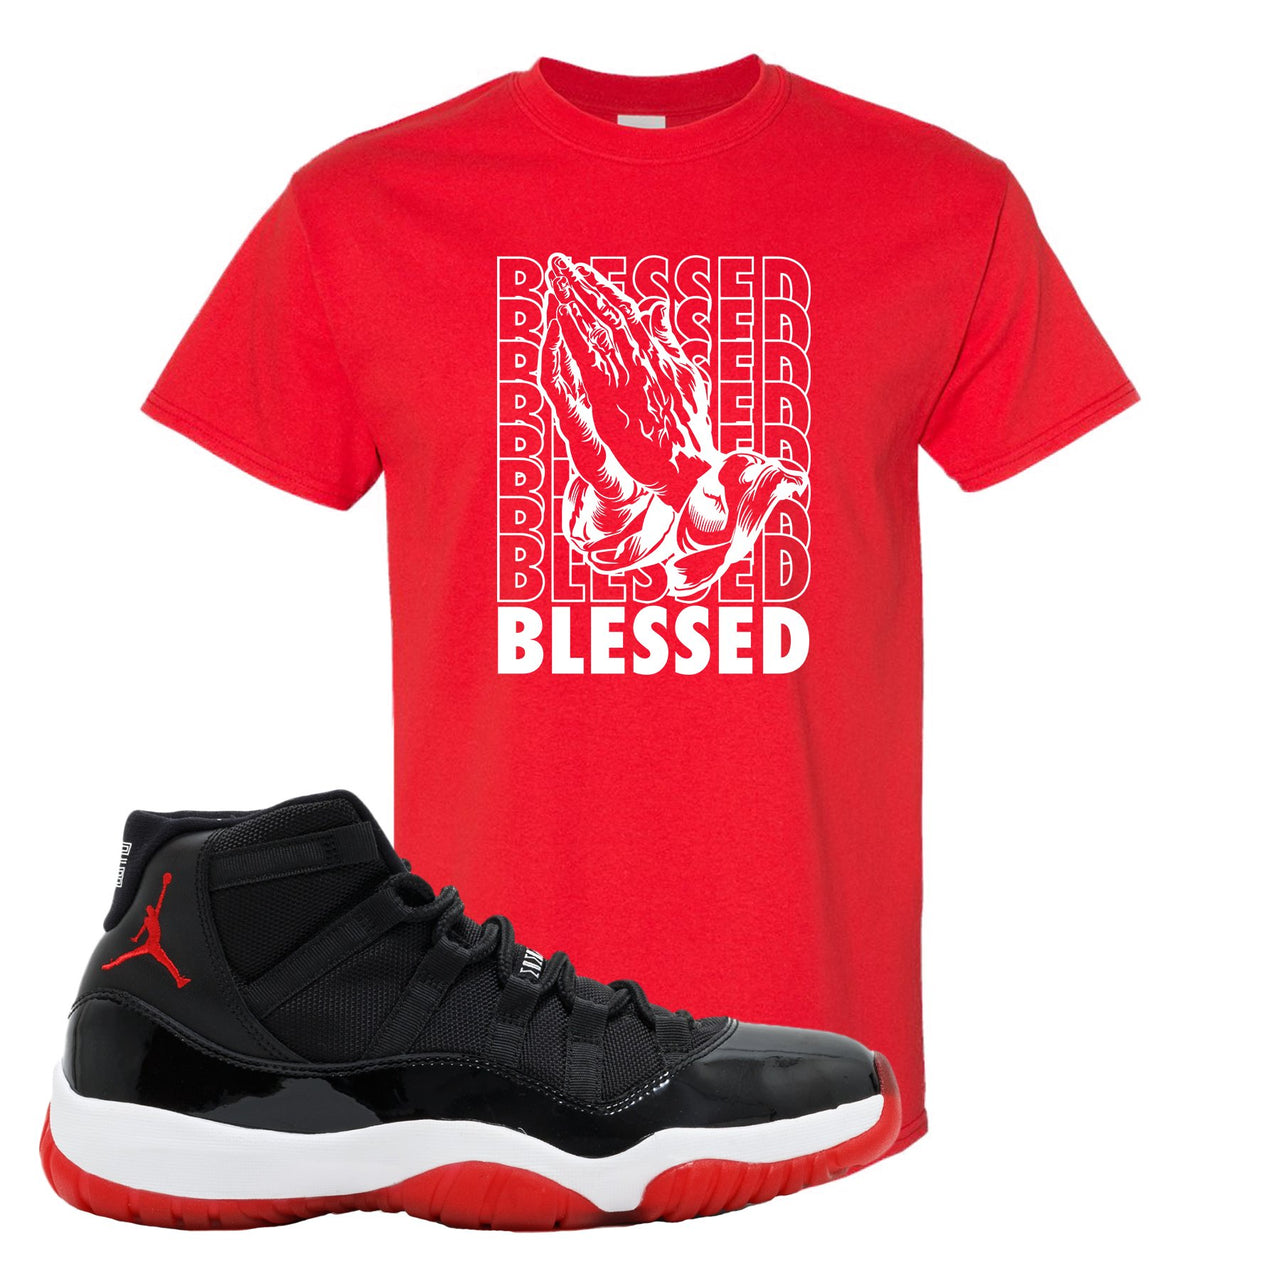 Jordan 11 Bred Blessed Red Sneaker Hook Up T-Shirt